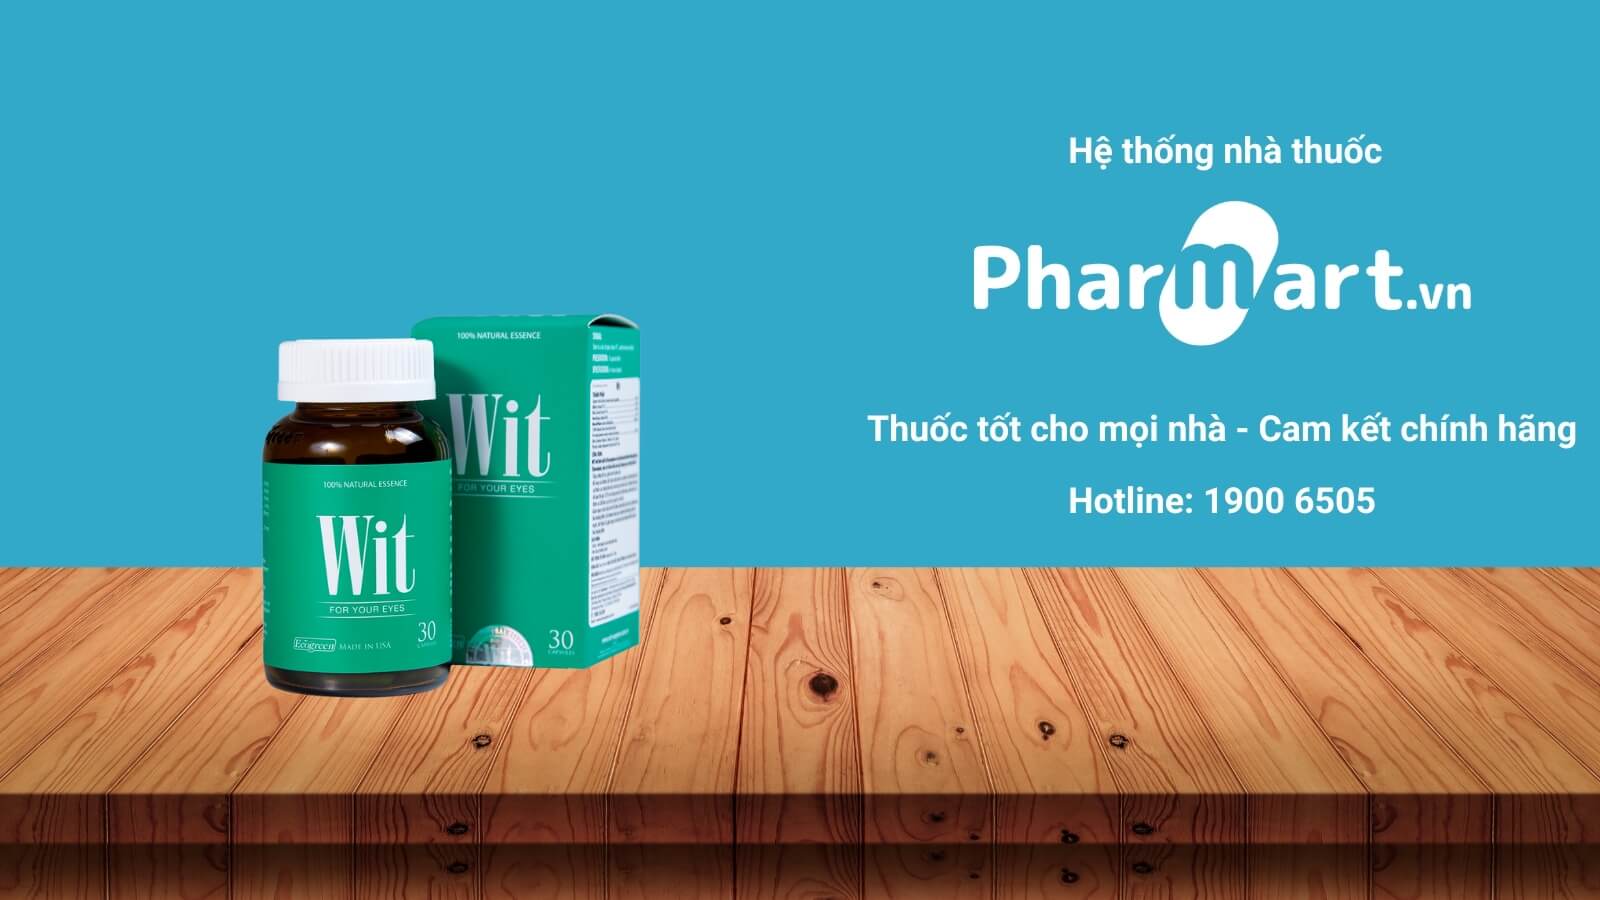 Mua Viên uống Wit chính hãng tại Pharmart.vn